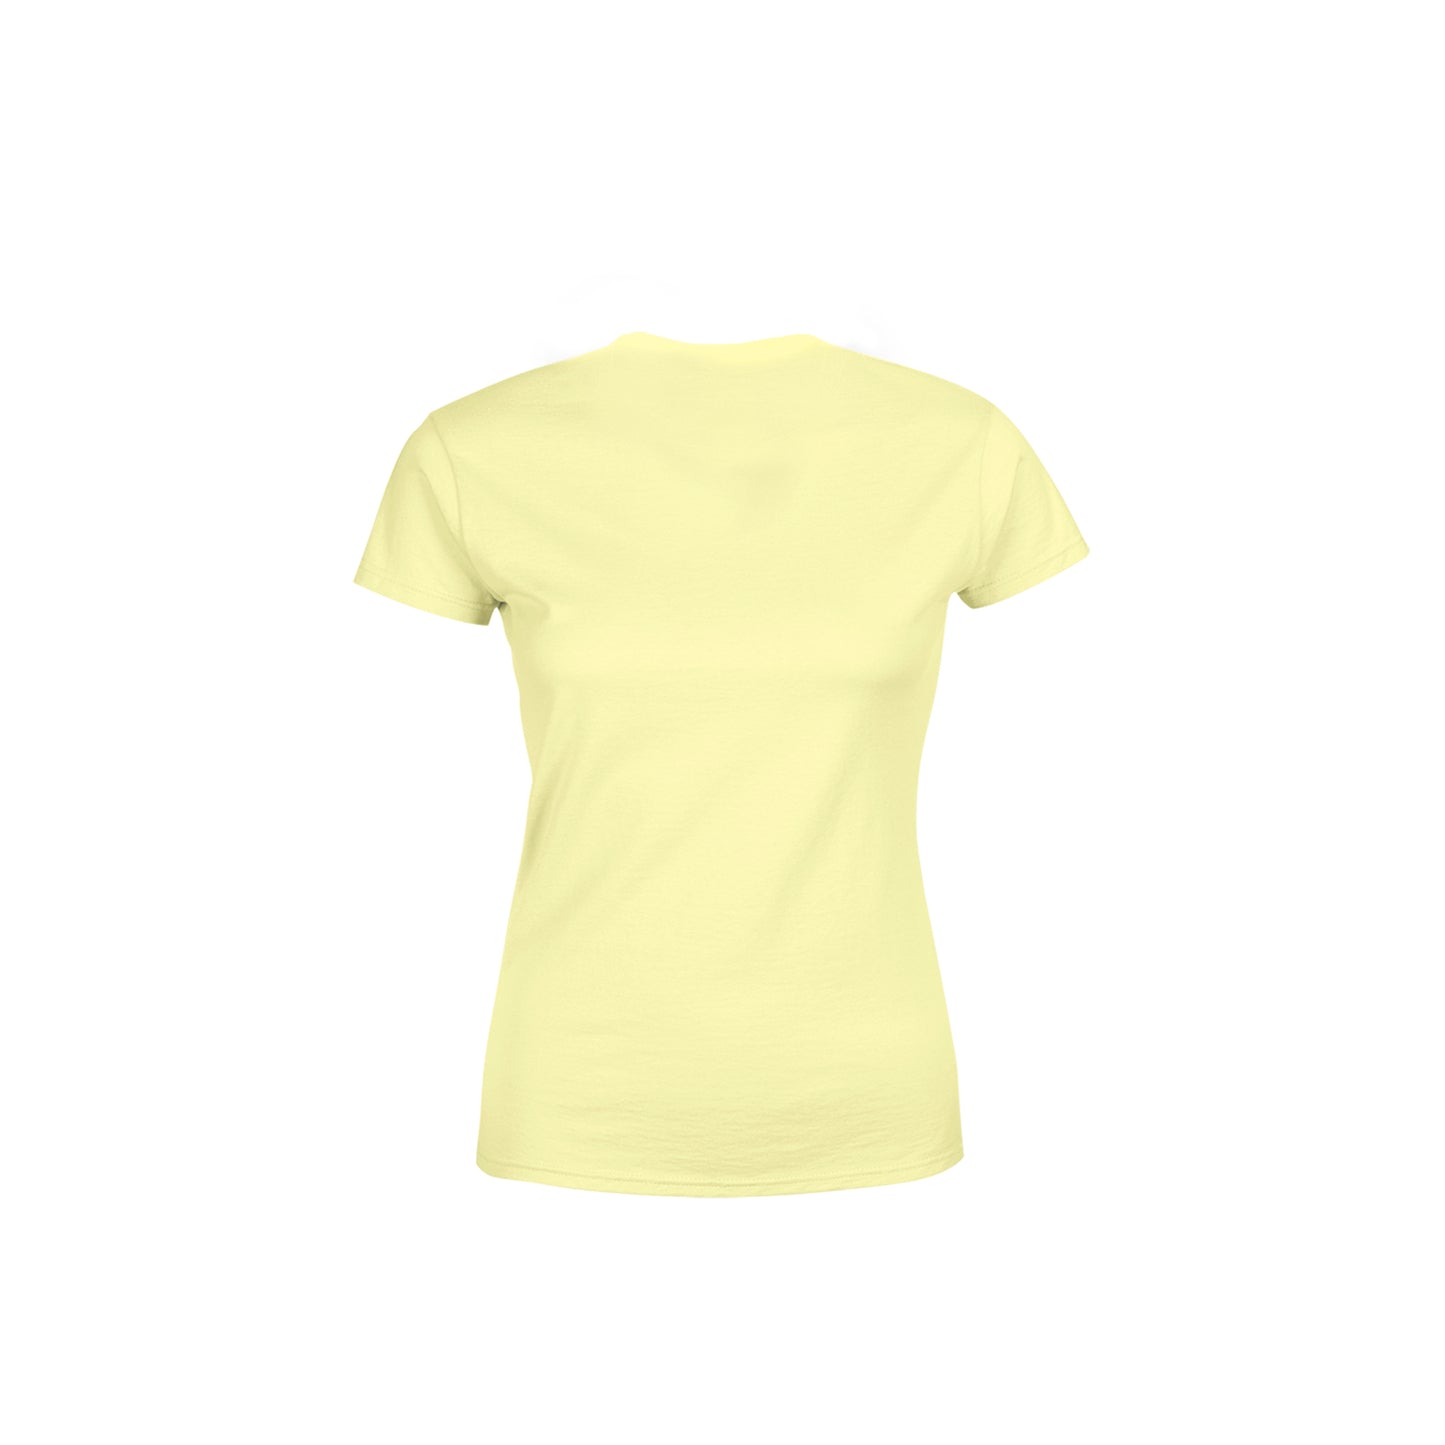 00 Number Women's T-Shirt (Butter Yellow)